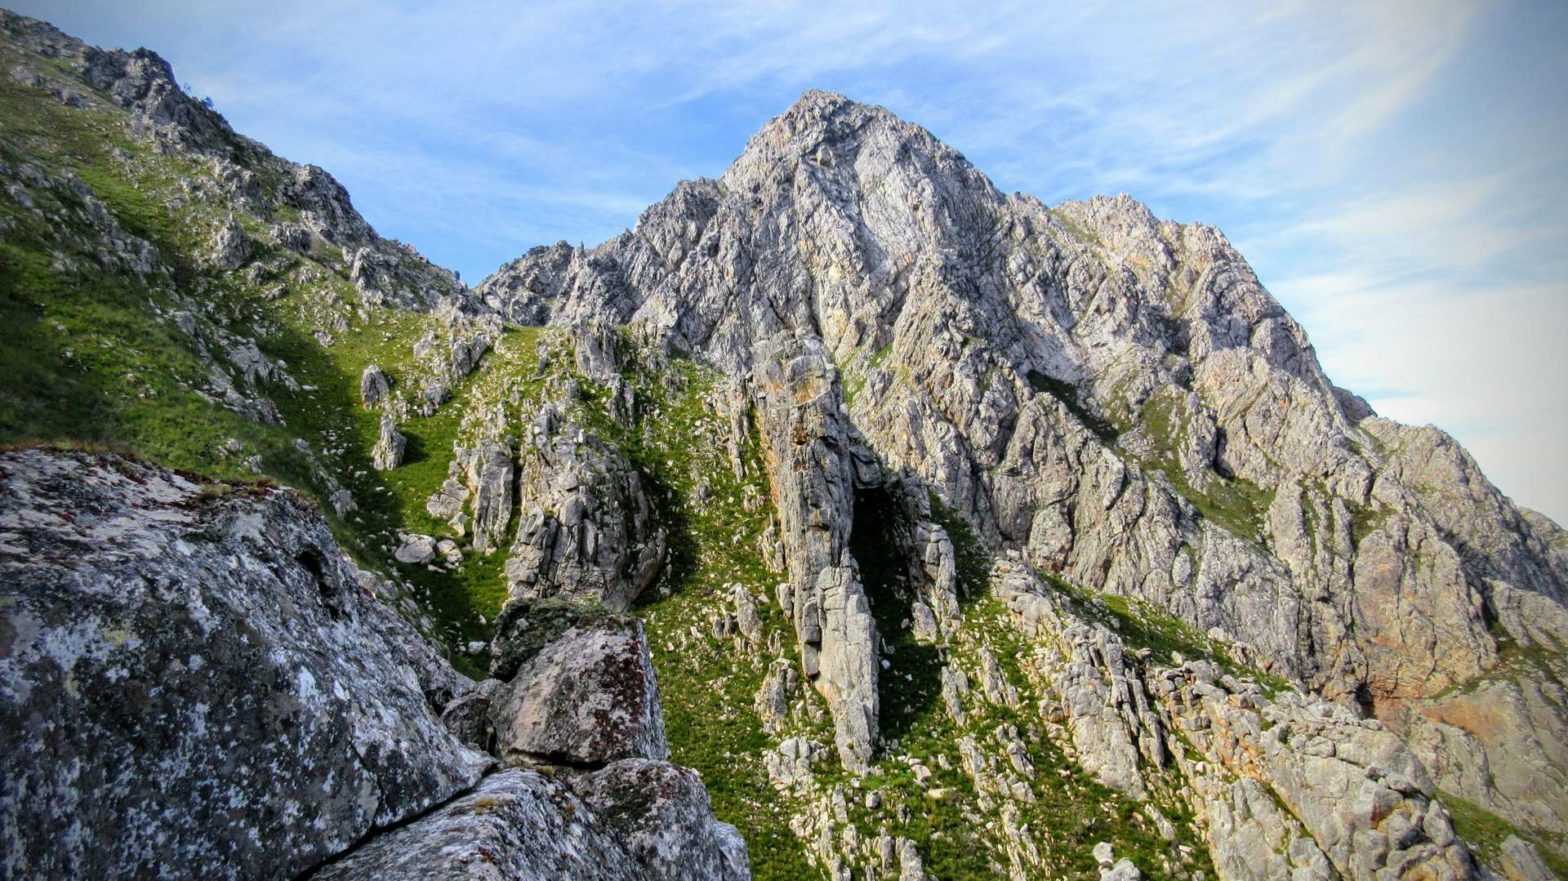 arangieskop peak